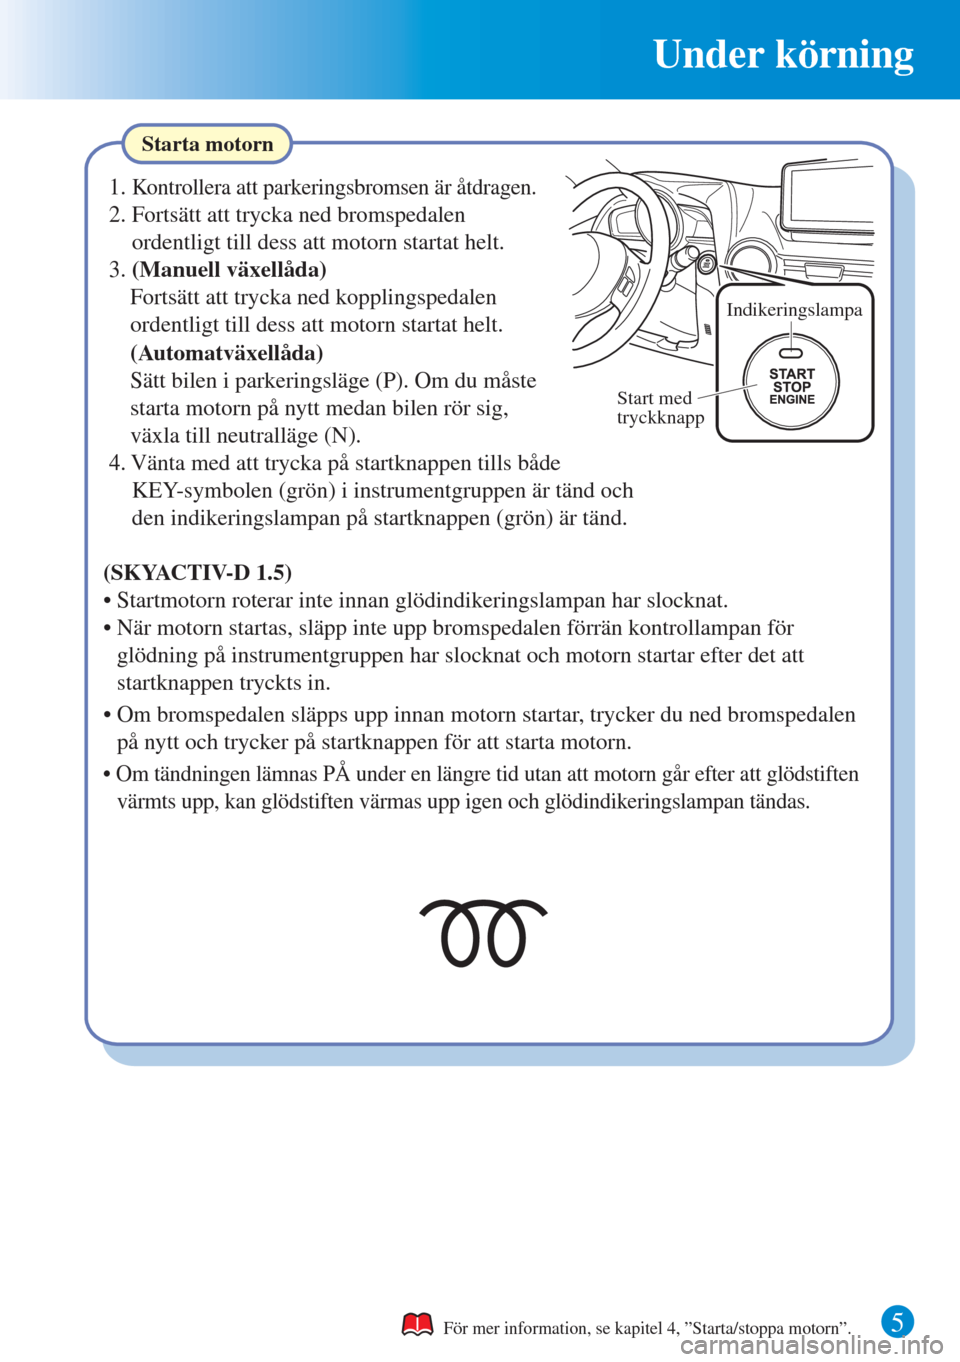 MAZDA MODEL CX-3 2015  Snabbguide (in Swedish) Under körning
5
Starta motorn
För mer information, se kapitel 4, ”Starta/stoppa motorn”.
1. Kontrollera att parkeringsbromsen är åtdragen.
2. Fortsätt att trycka ned bromspedalen 
ordentligt 